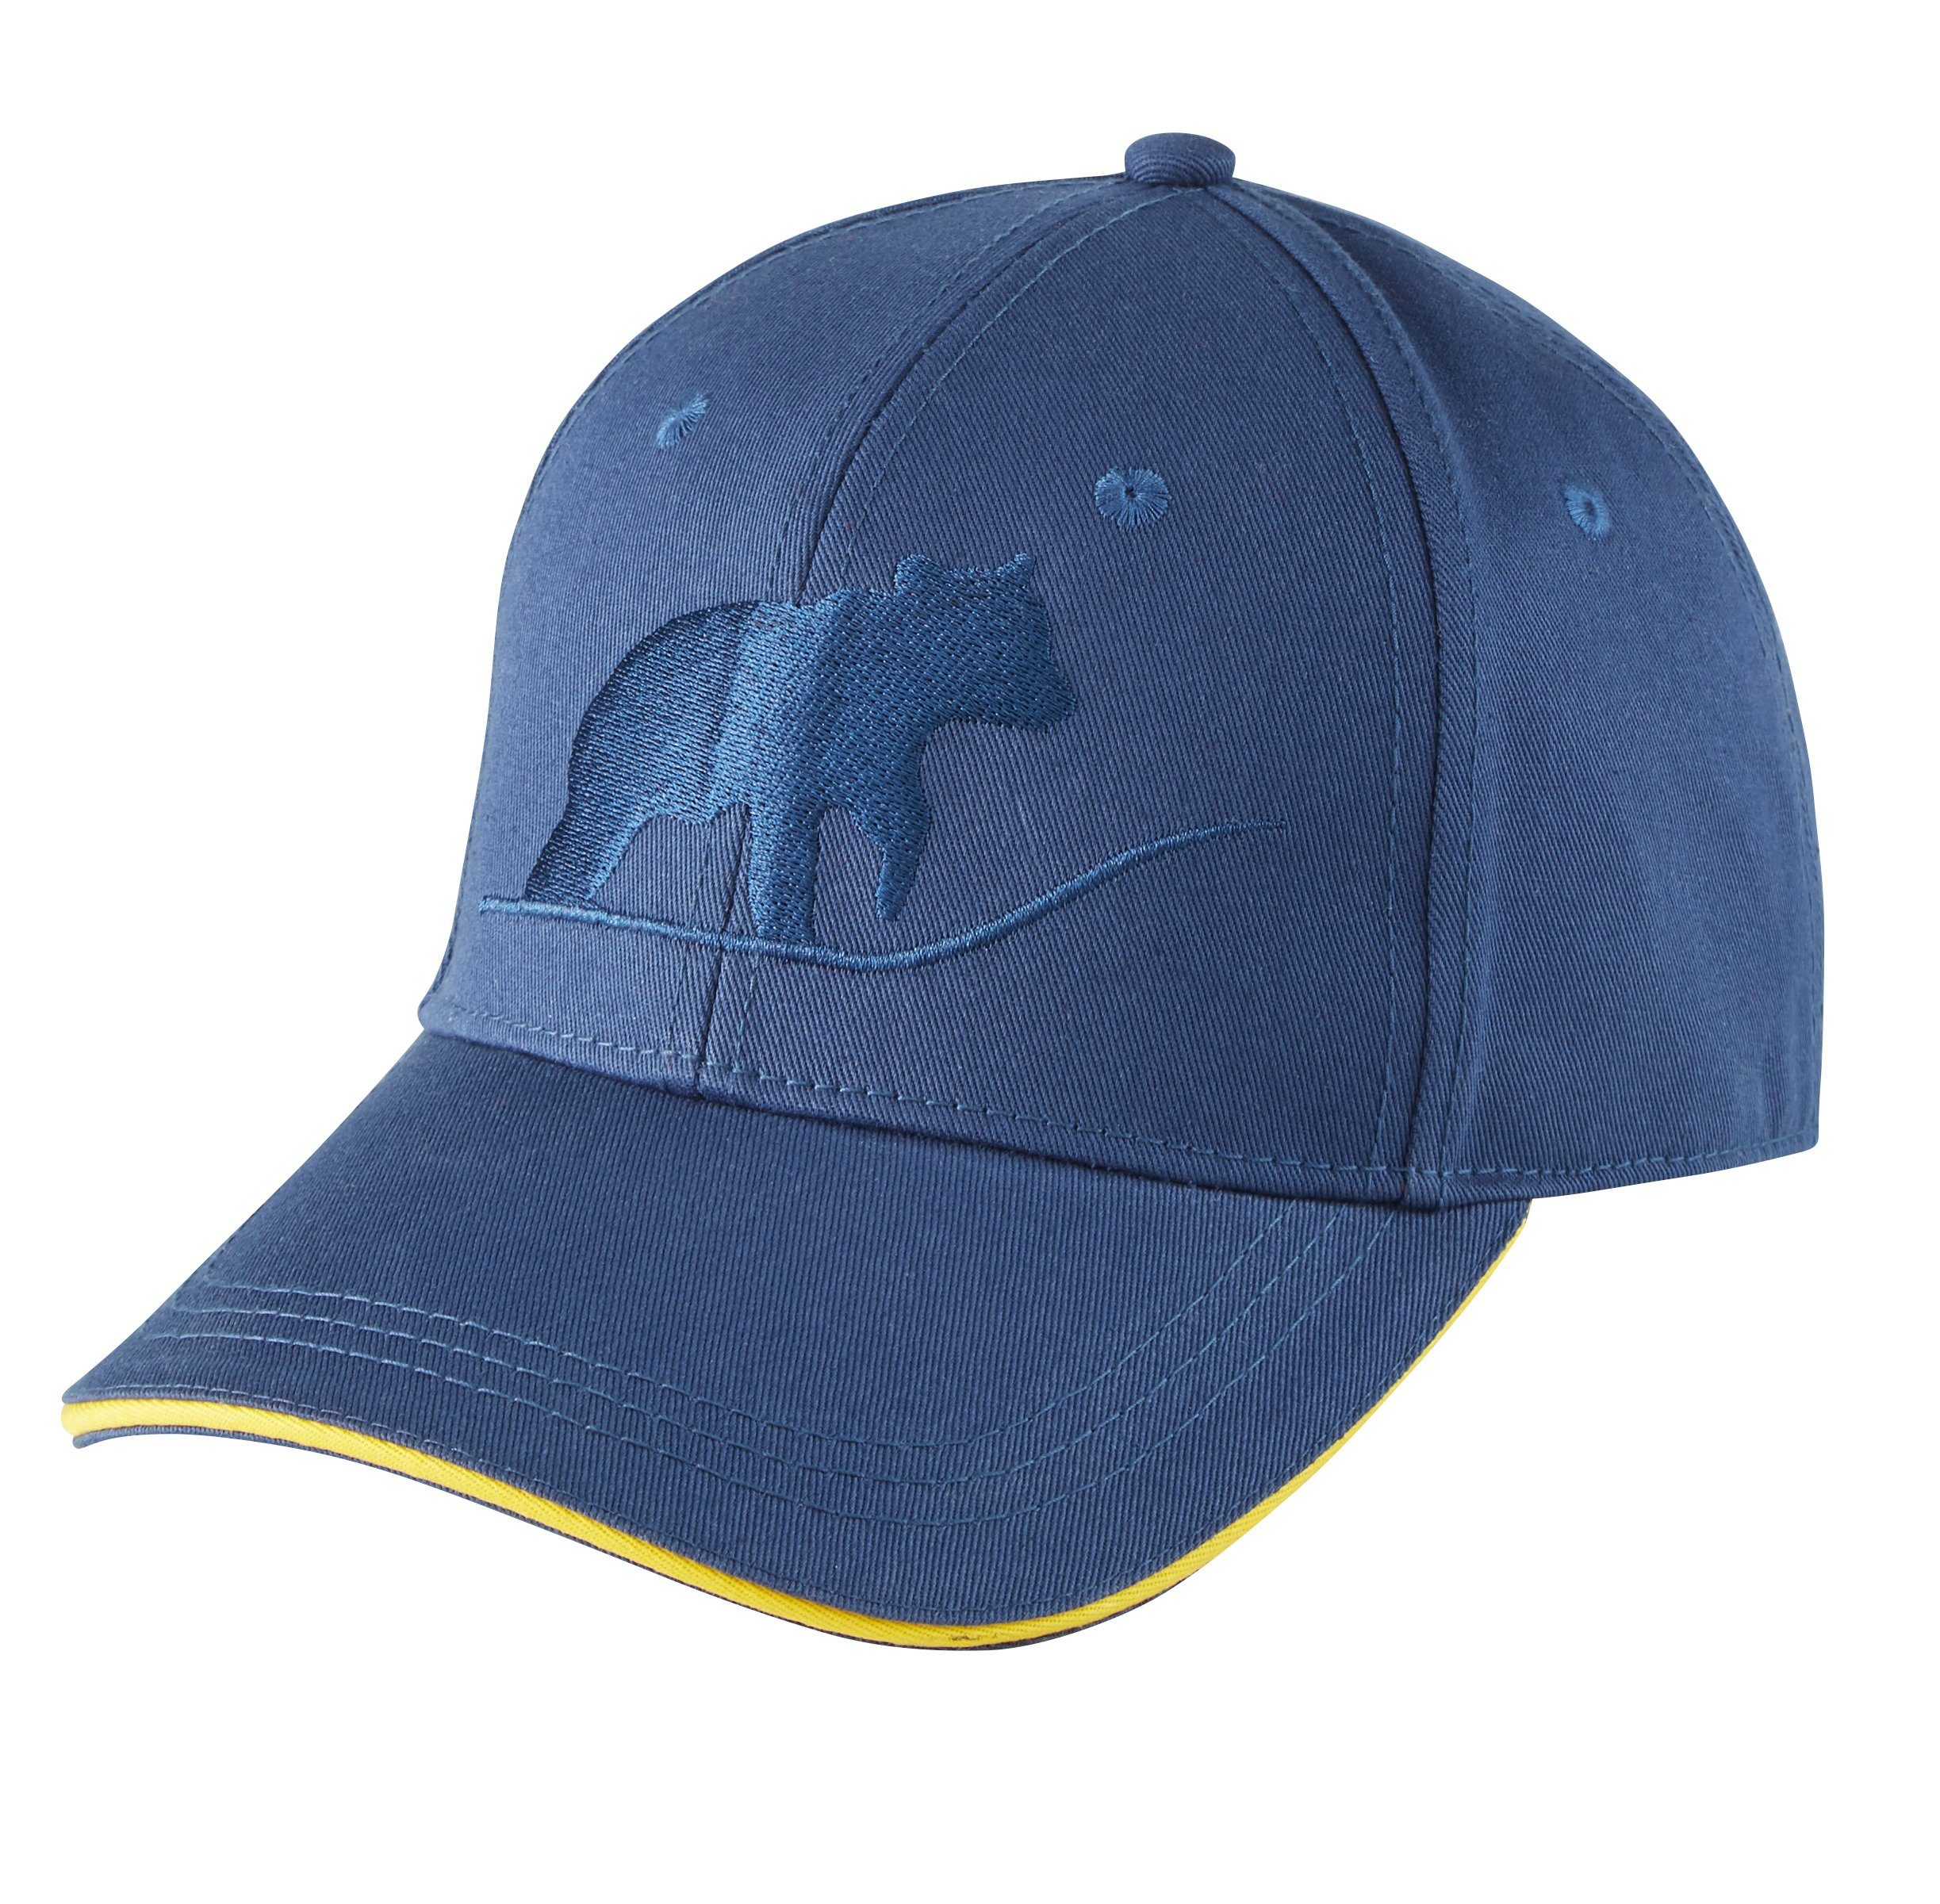 Northern Country Snapback Cap größenverstellbar, schützt beim Arbeiten vor Sonne Blue Wing Teal | Snapback Caps